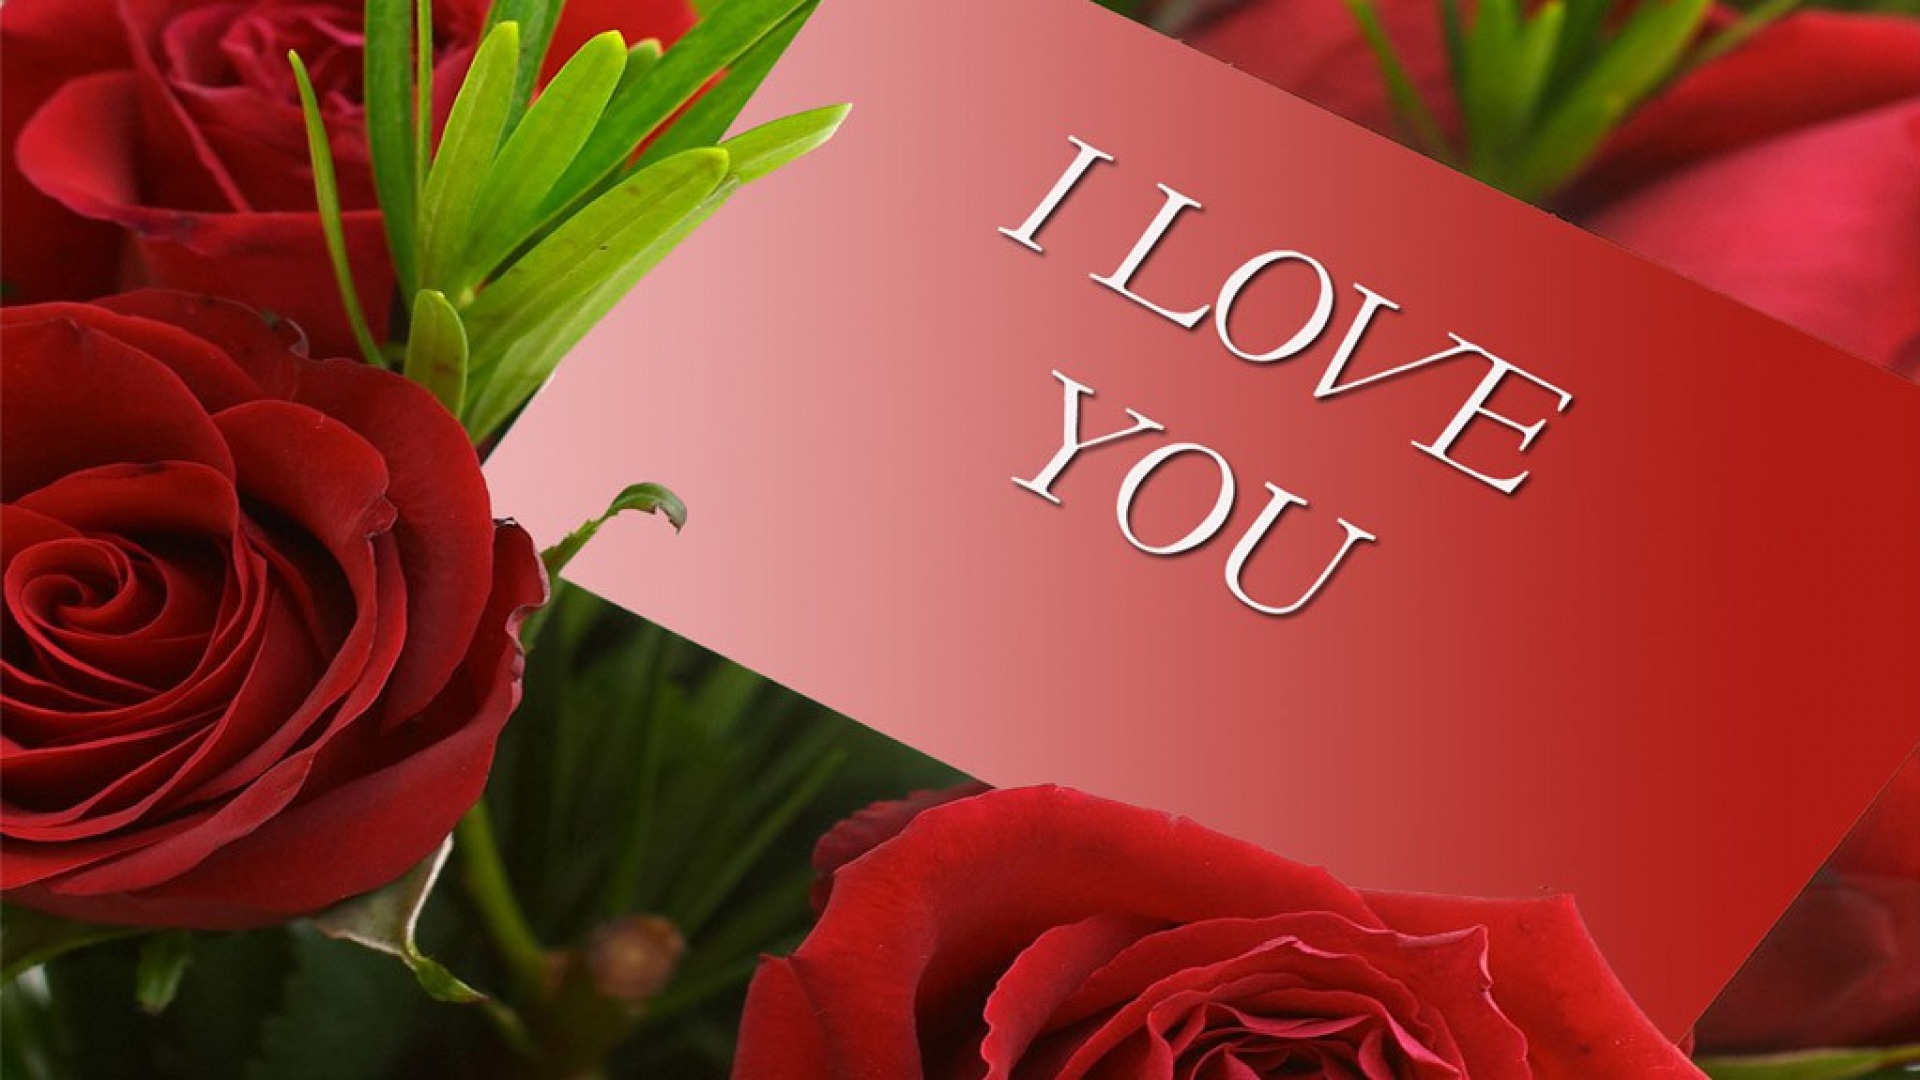 Tuyển tập 20 hình nền chữ i love you đẹp trong tình yêu - Hình 1